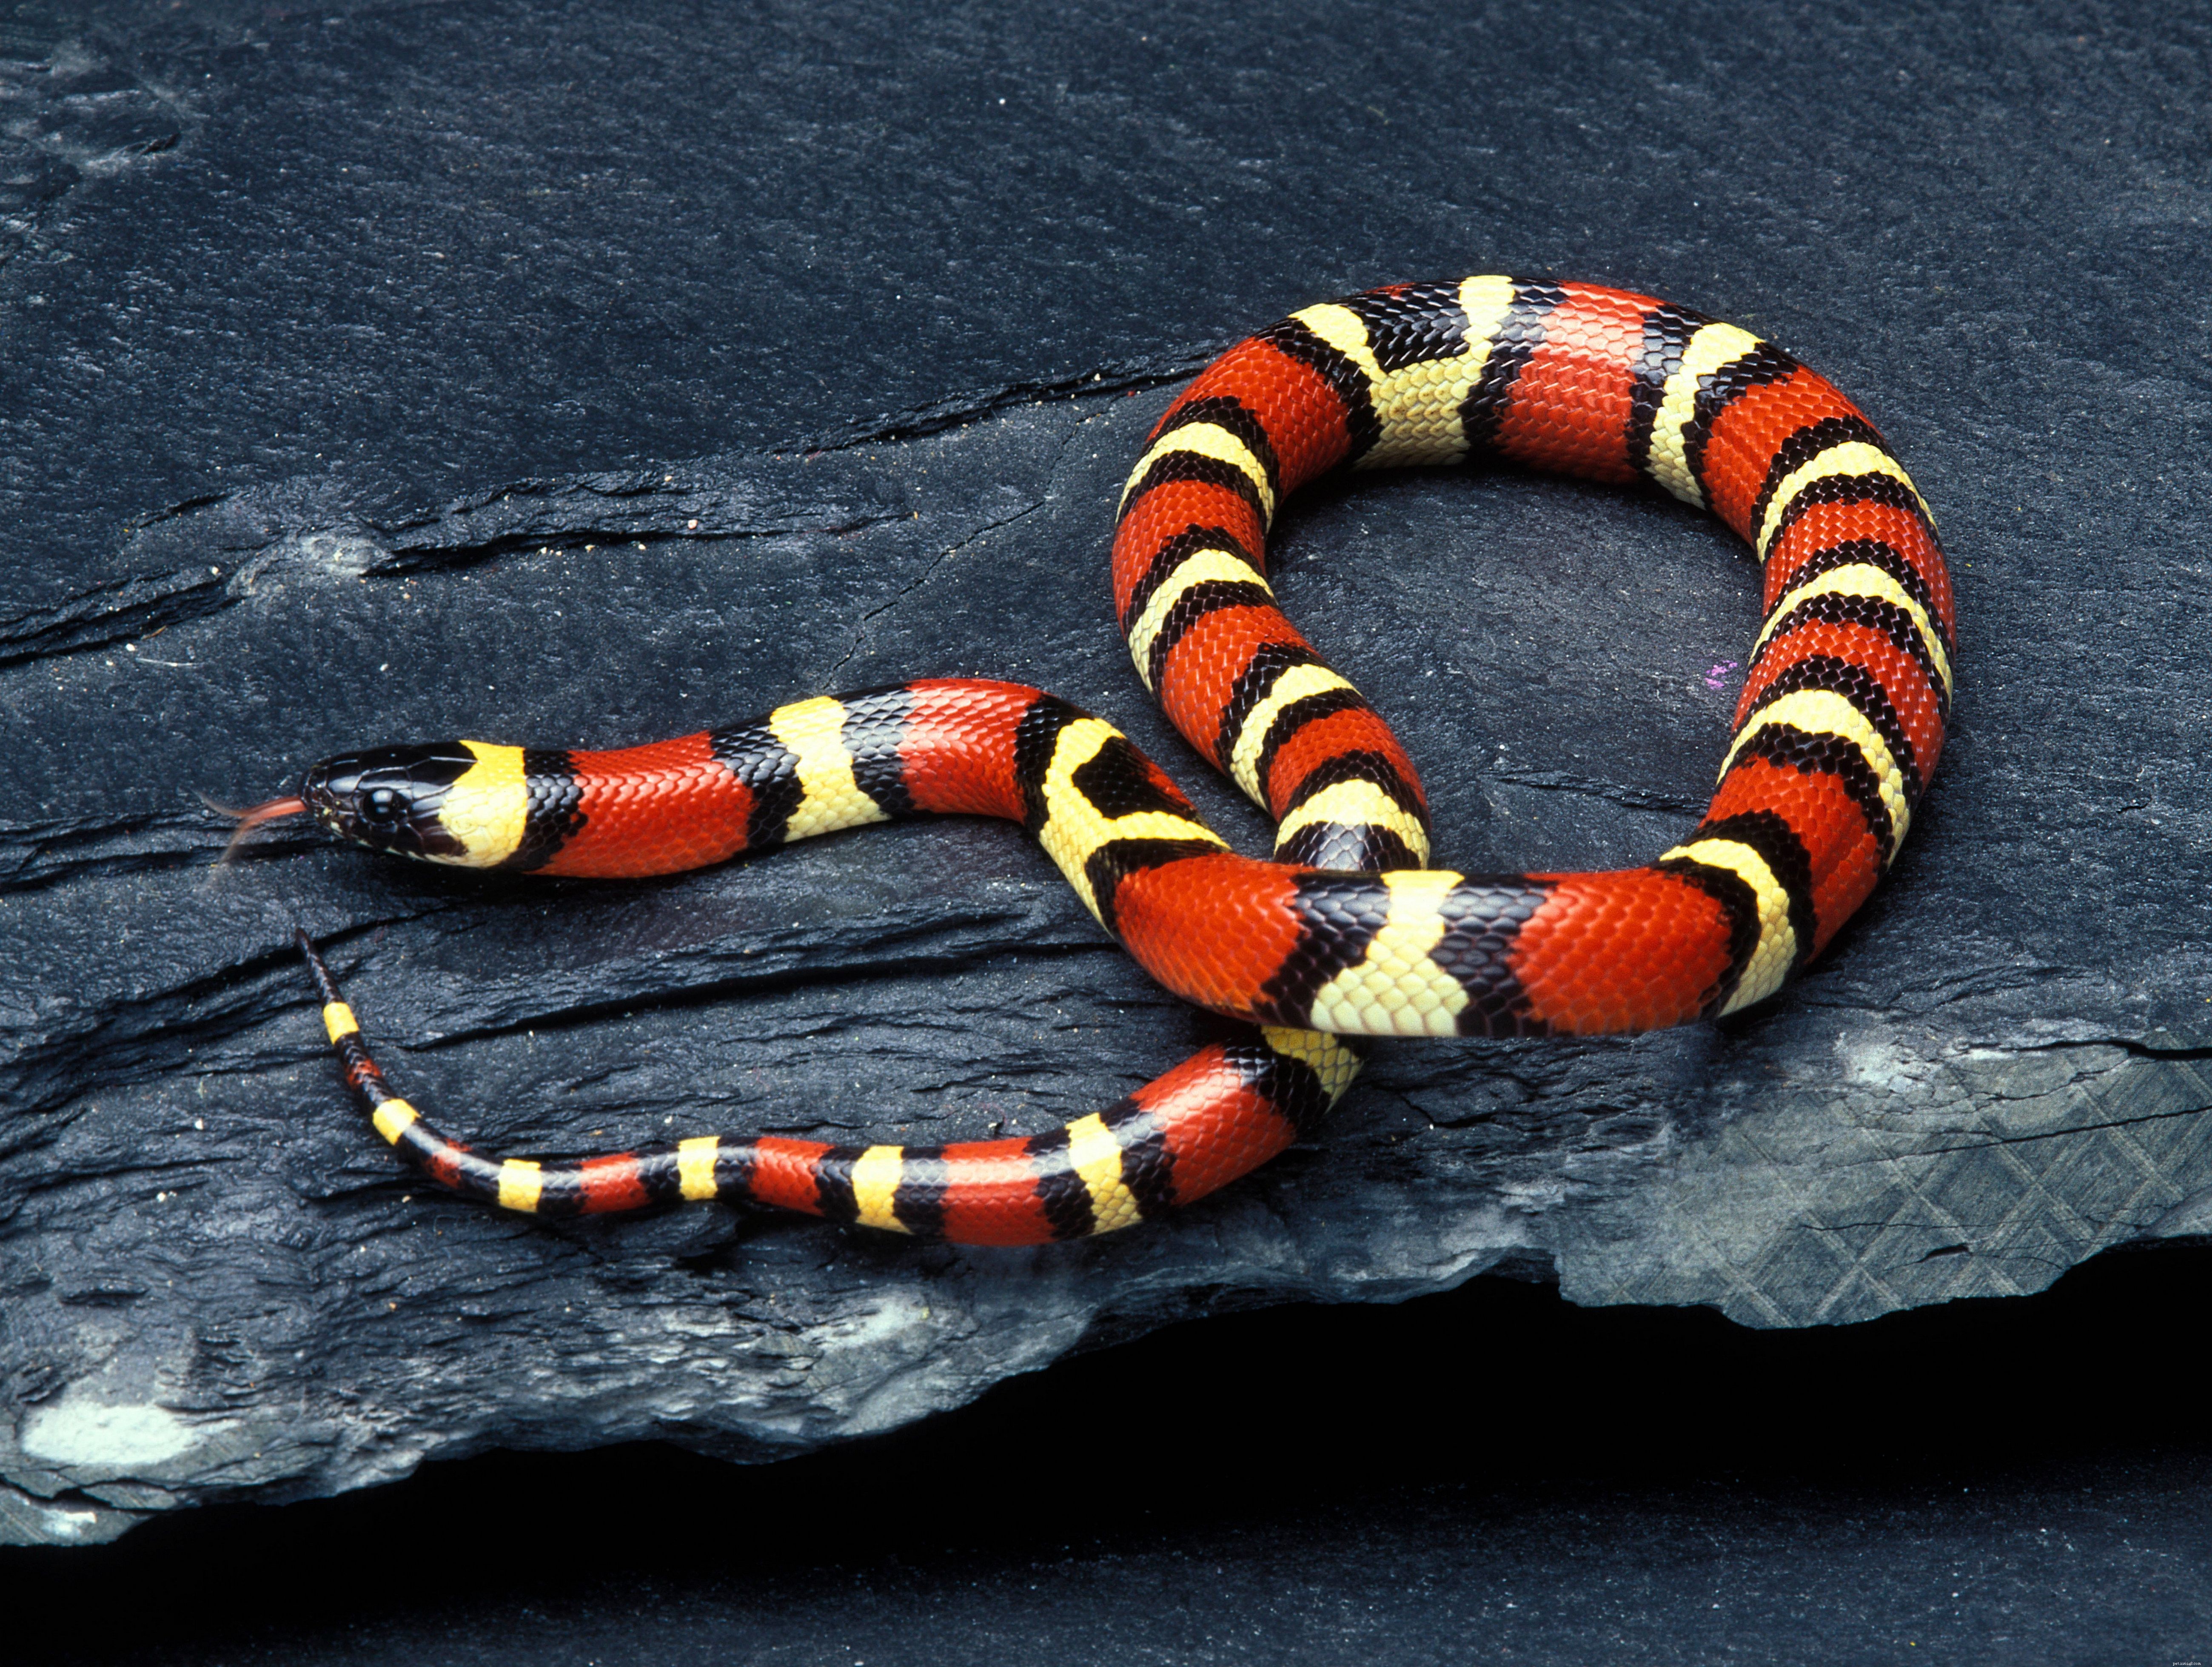 ペットとして一般的に飼われているヘビの種 